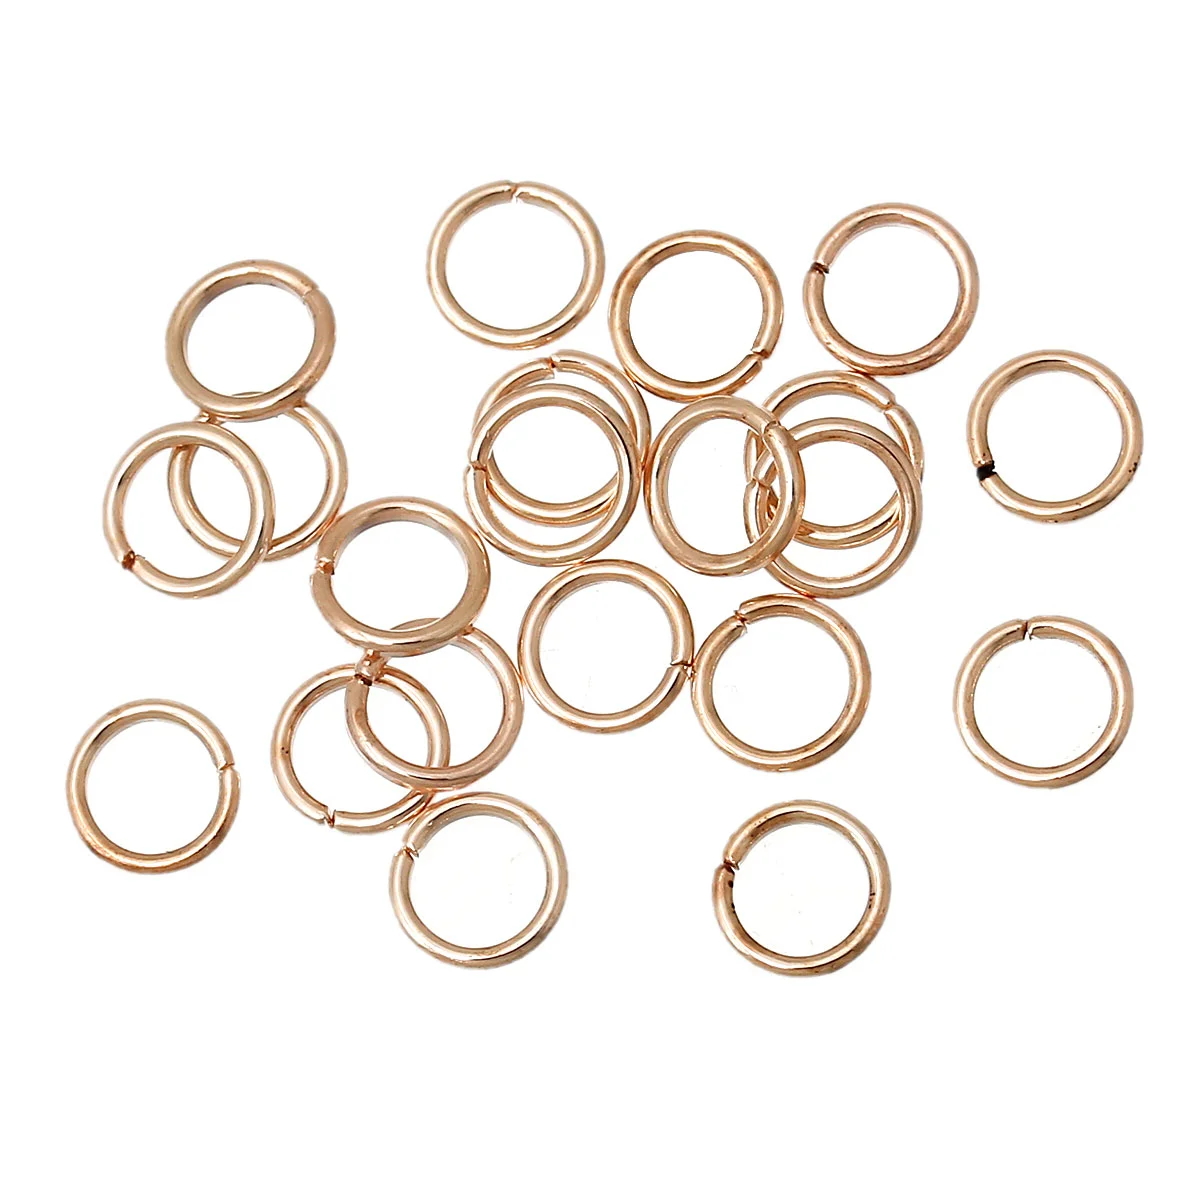 8 сезонов Открыть Перейти Кольца Выводы розовое золото-6 мм диаметр, 1000 шт. (B30881)